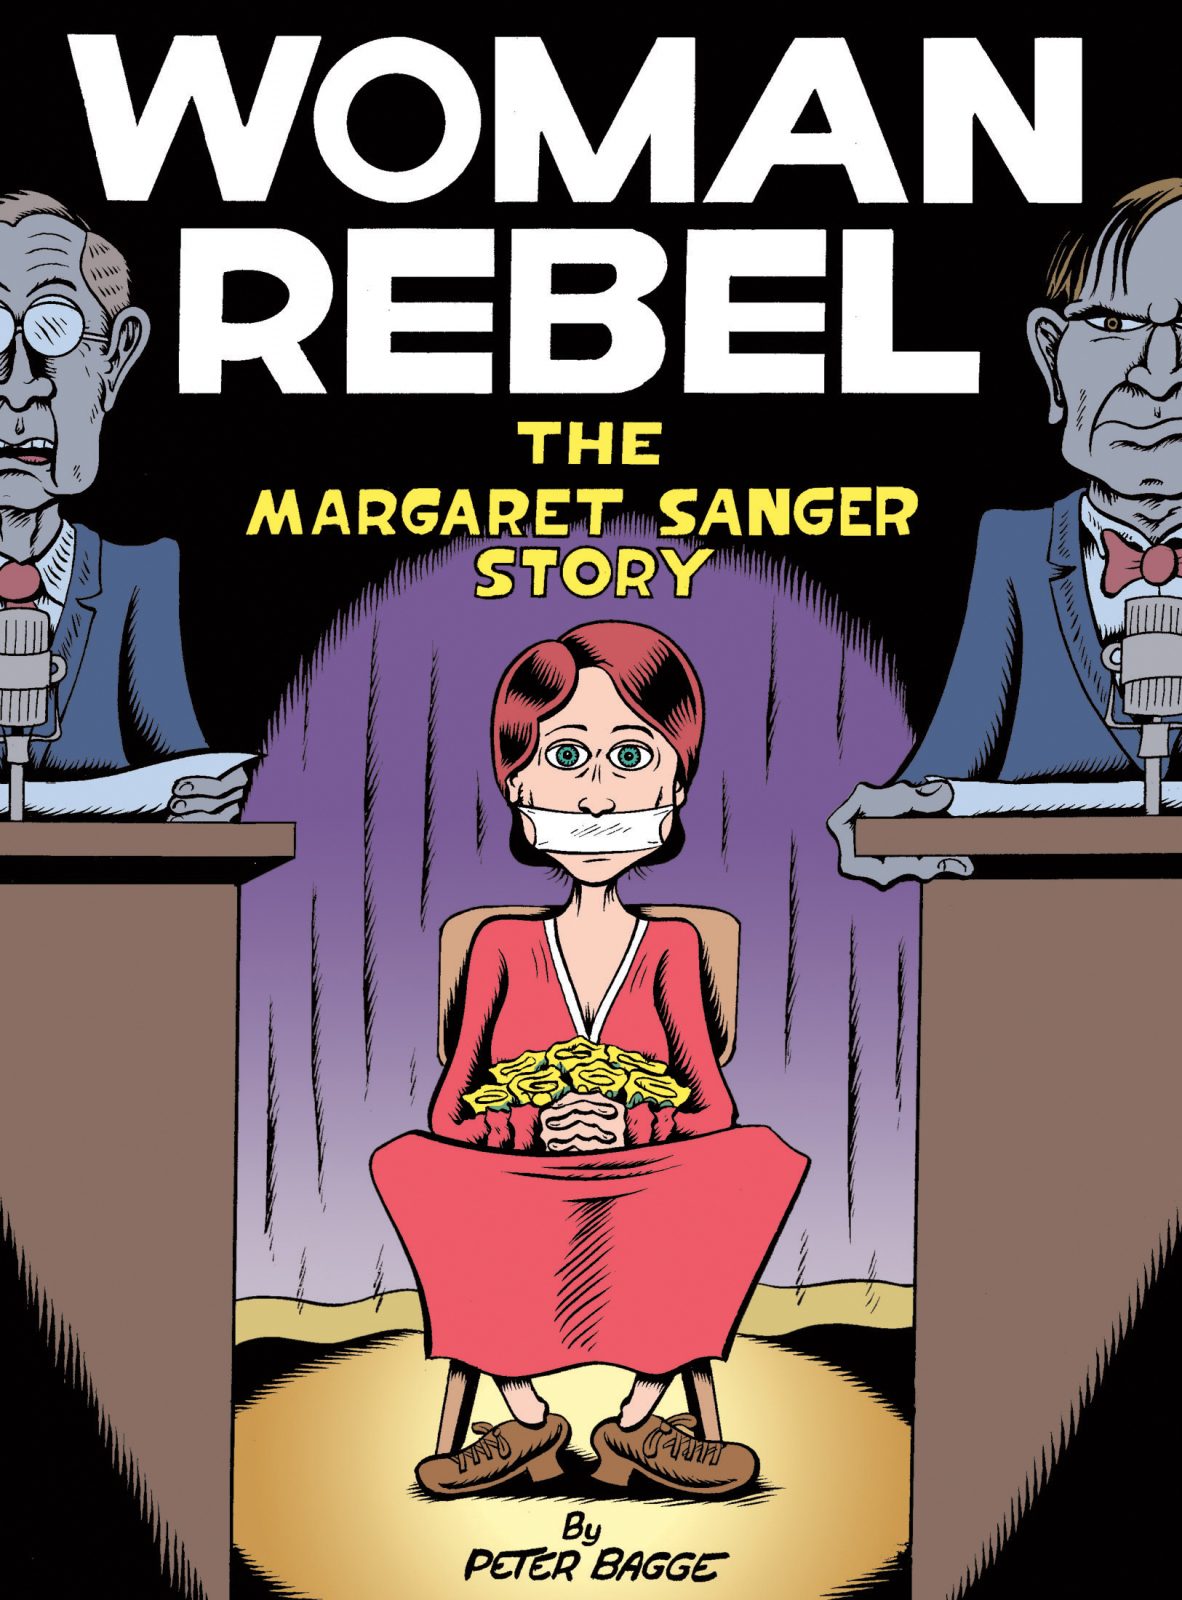 Woman Rebel, by Peter Bagge